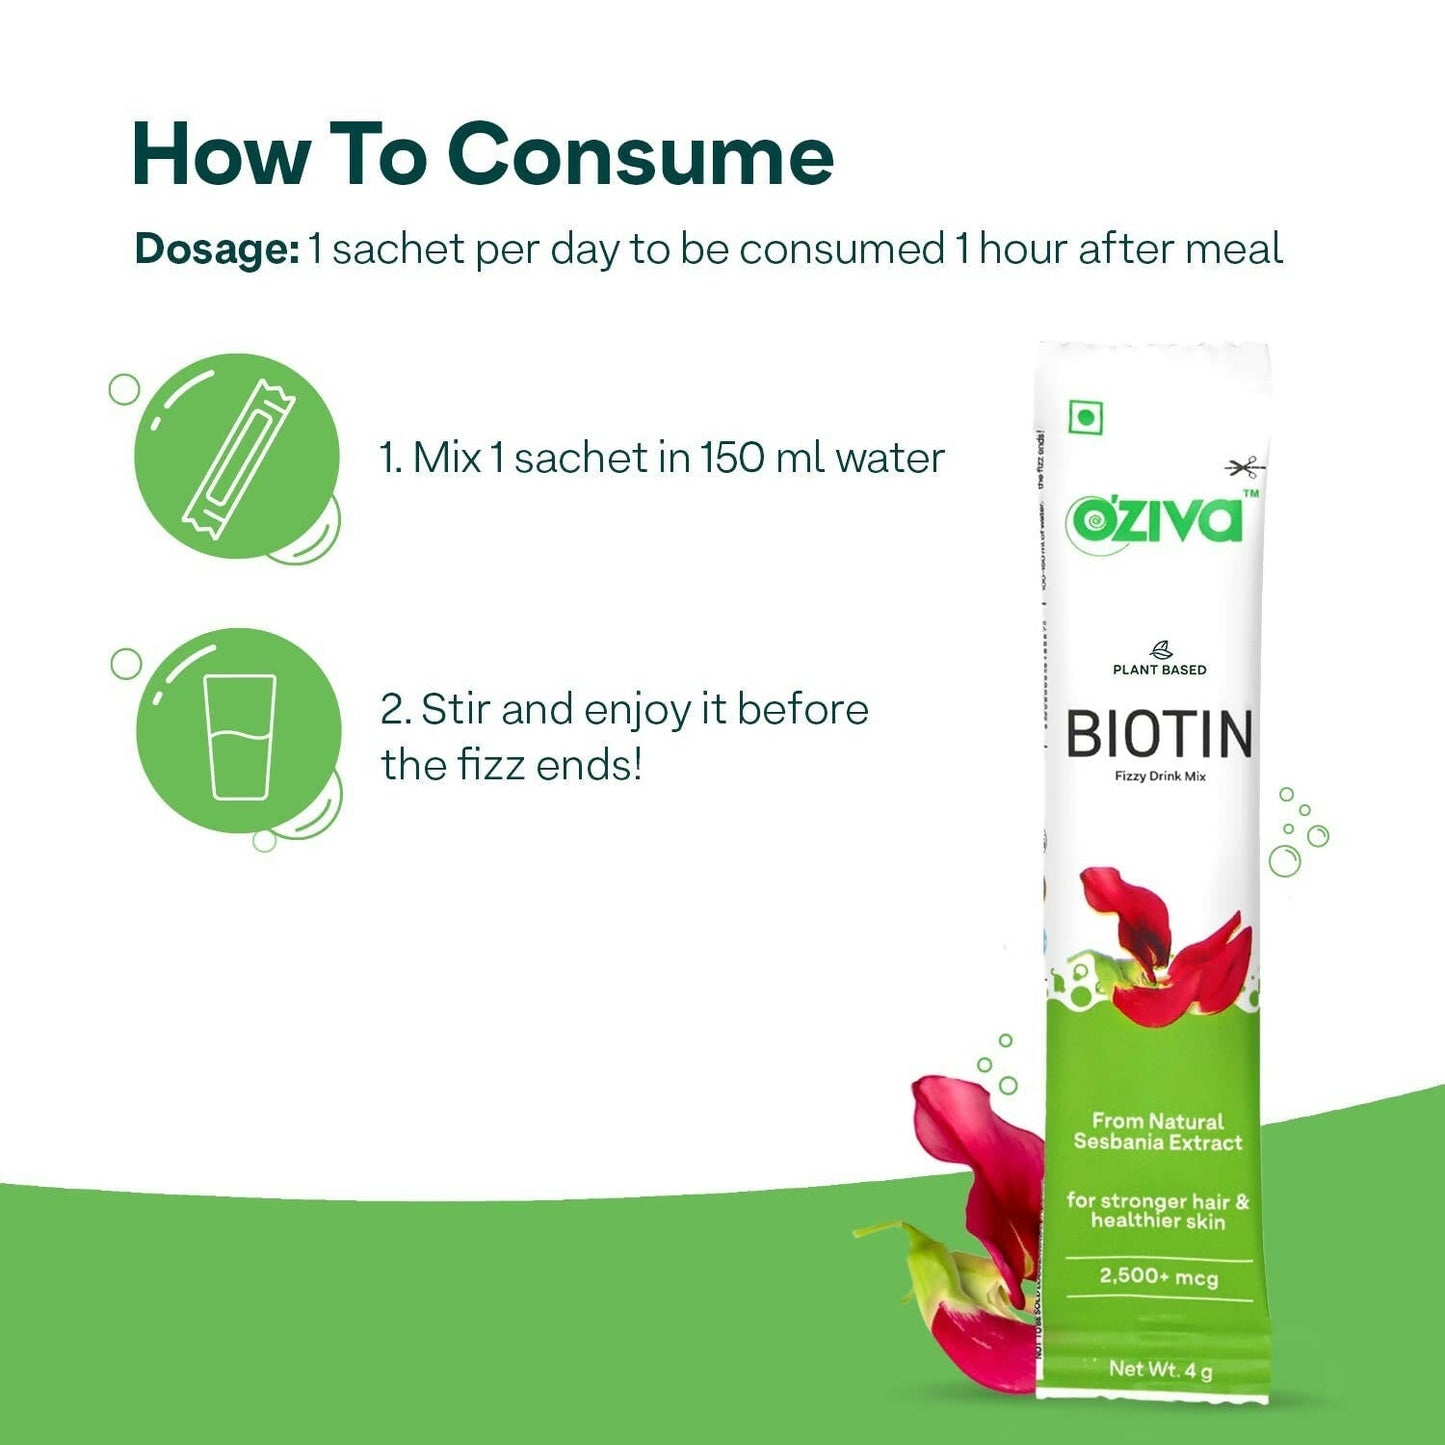 OZiva Plant Based Biotin Fizzy Drink Mix